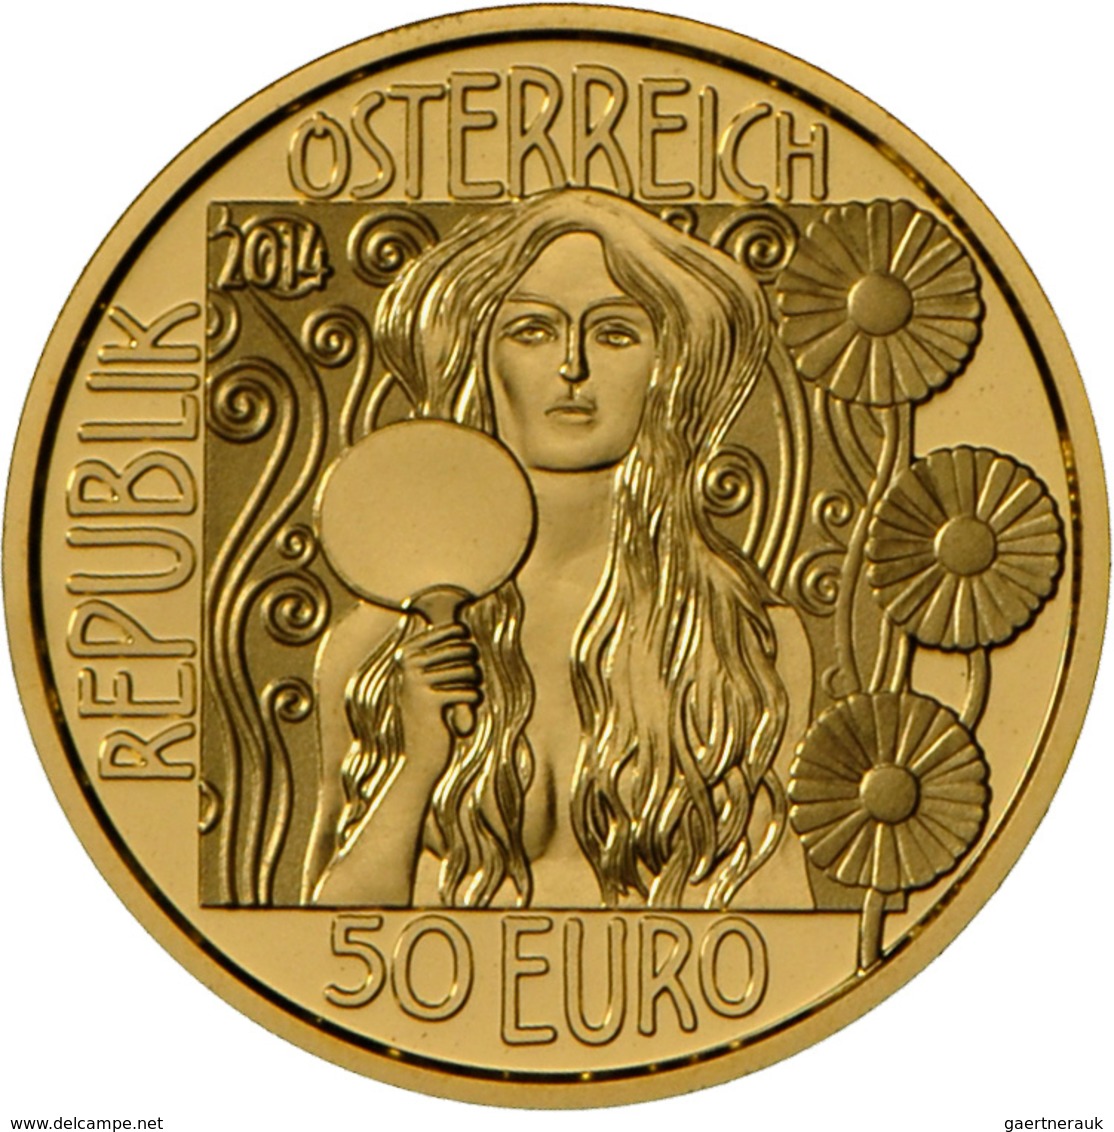 Österreich - Anlagegold: Lot 4 Goldmünzen: 50 Euro 2012 Adele Bloch-Bauer I. (2x) 10,14 g, 986/1000